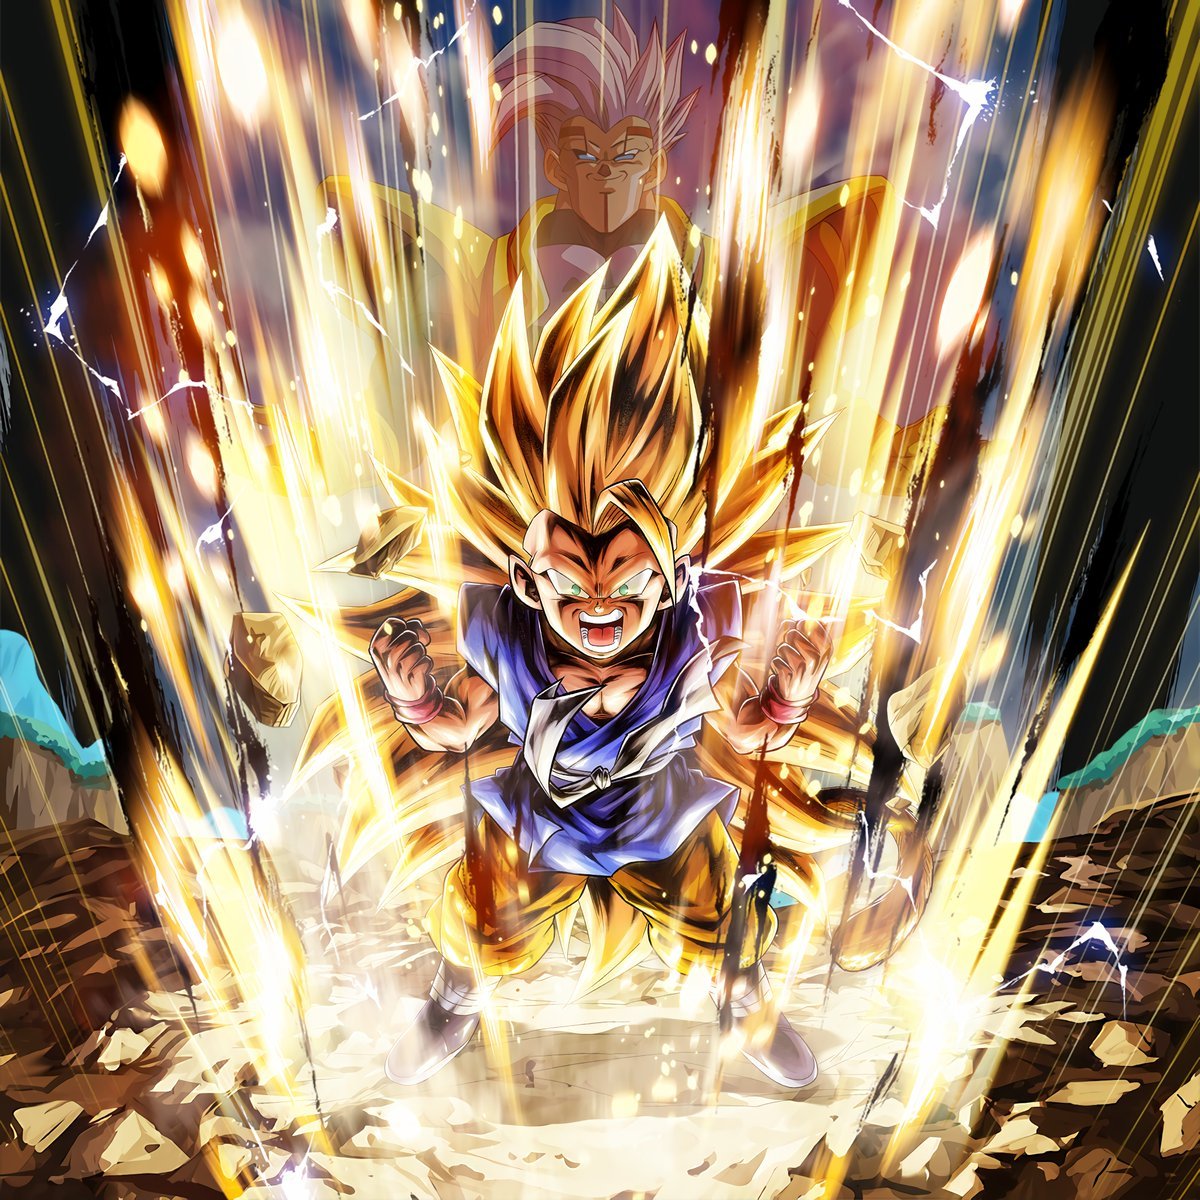 SSJ3 GT Goku skills – Shatter Blast & Super Dragon Flash